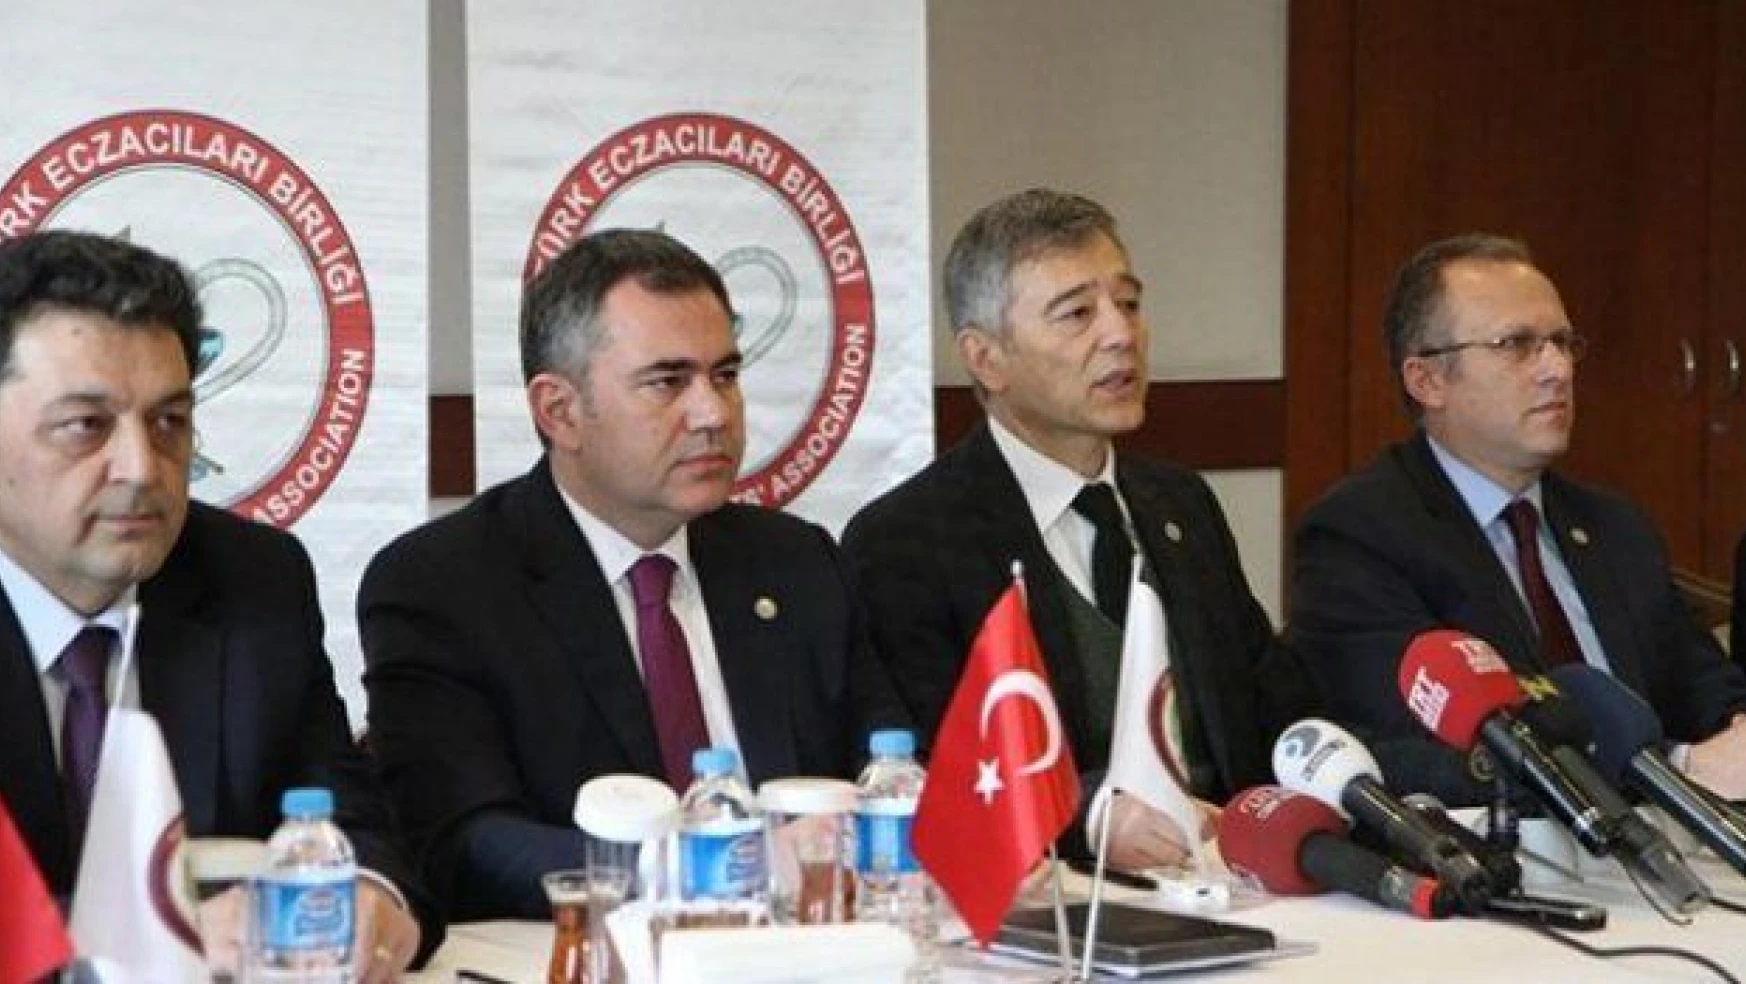 Çalışma Bakanlığı ile Türk Eczacılar Birliği arasındaki ilaç krizi çözüldü!